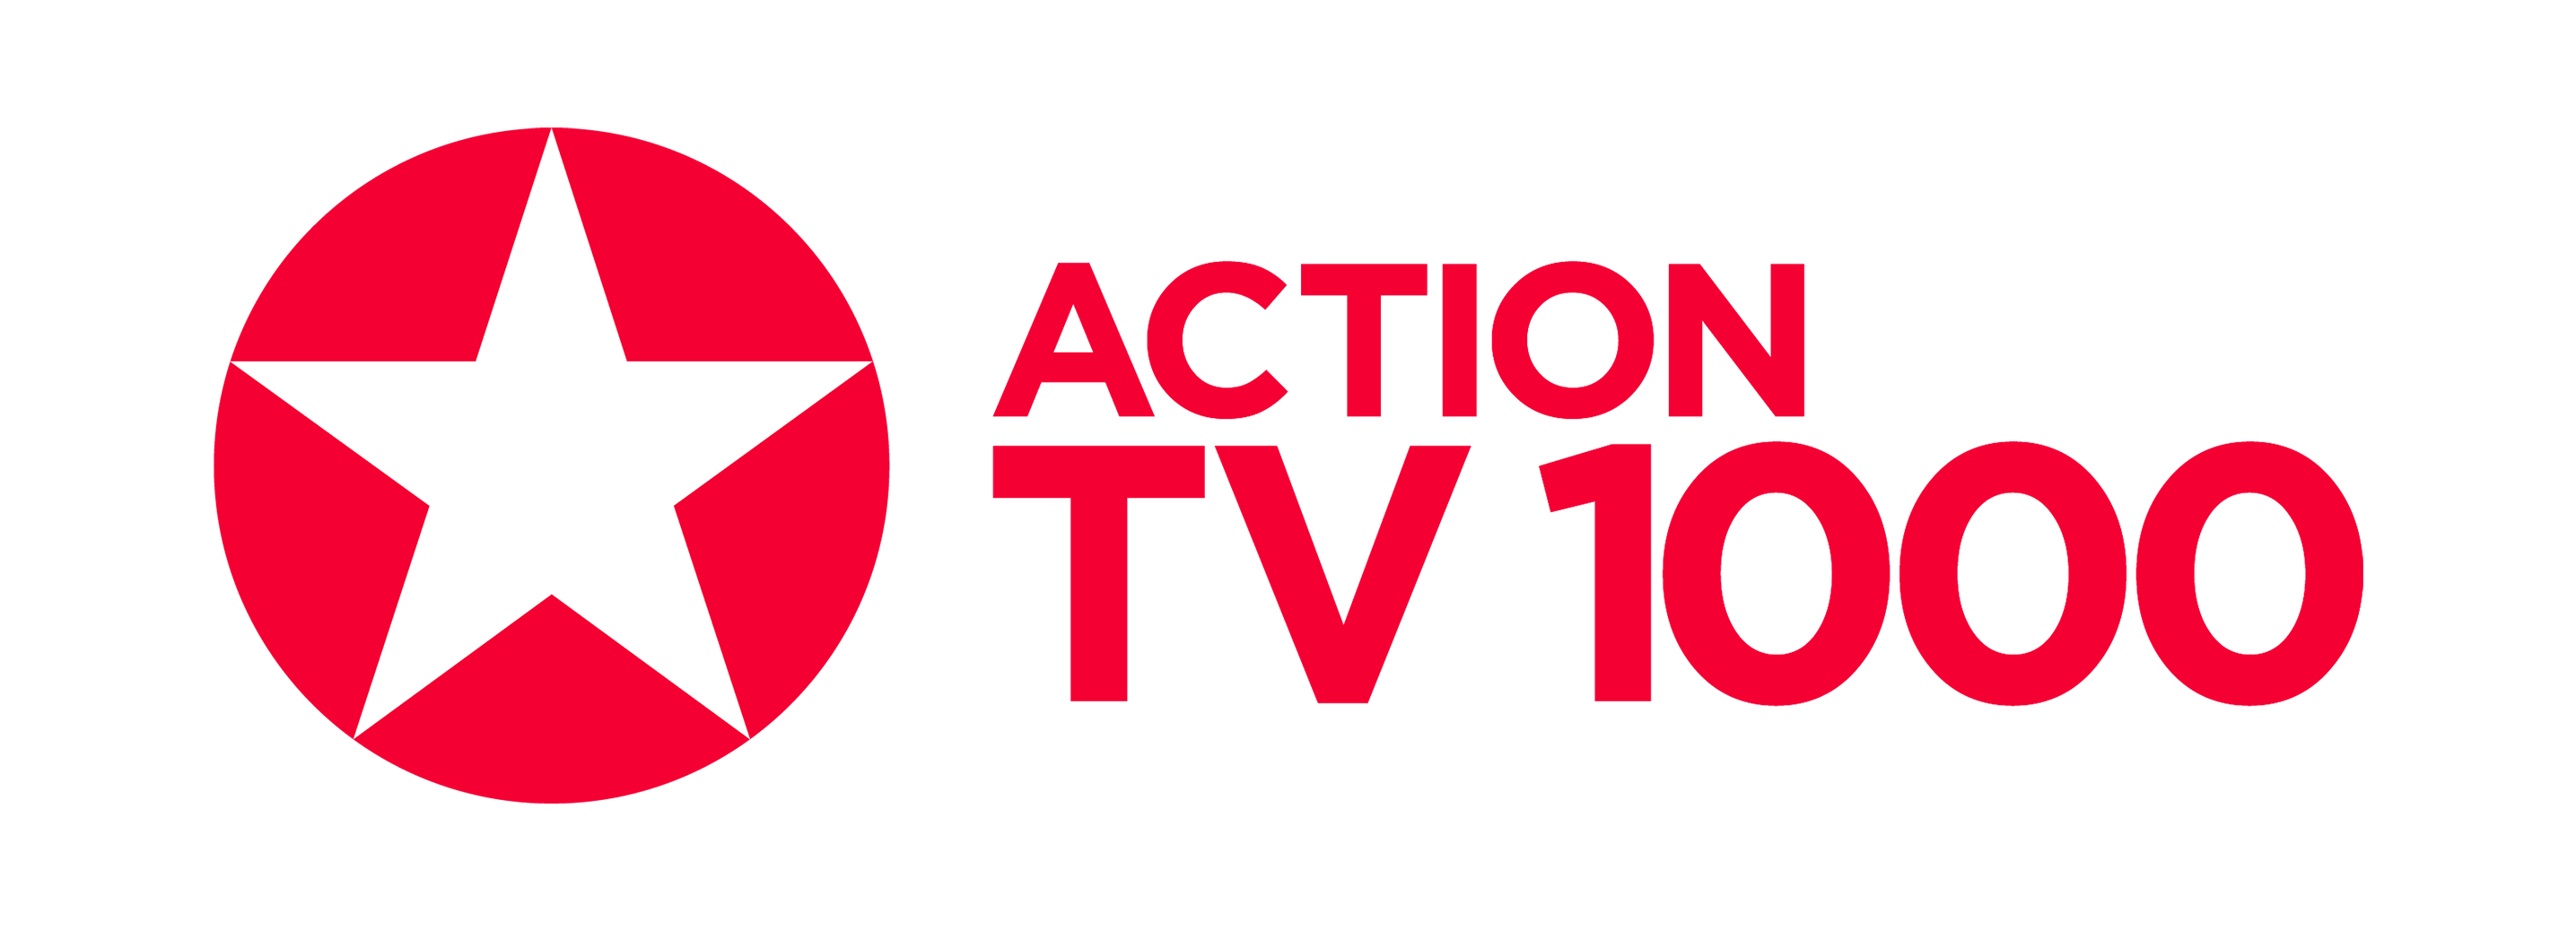 1000тв русское. Tv1000. Телеканал tv1000. Tv1000 Action. ТВ 1000 логотип.